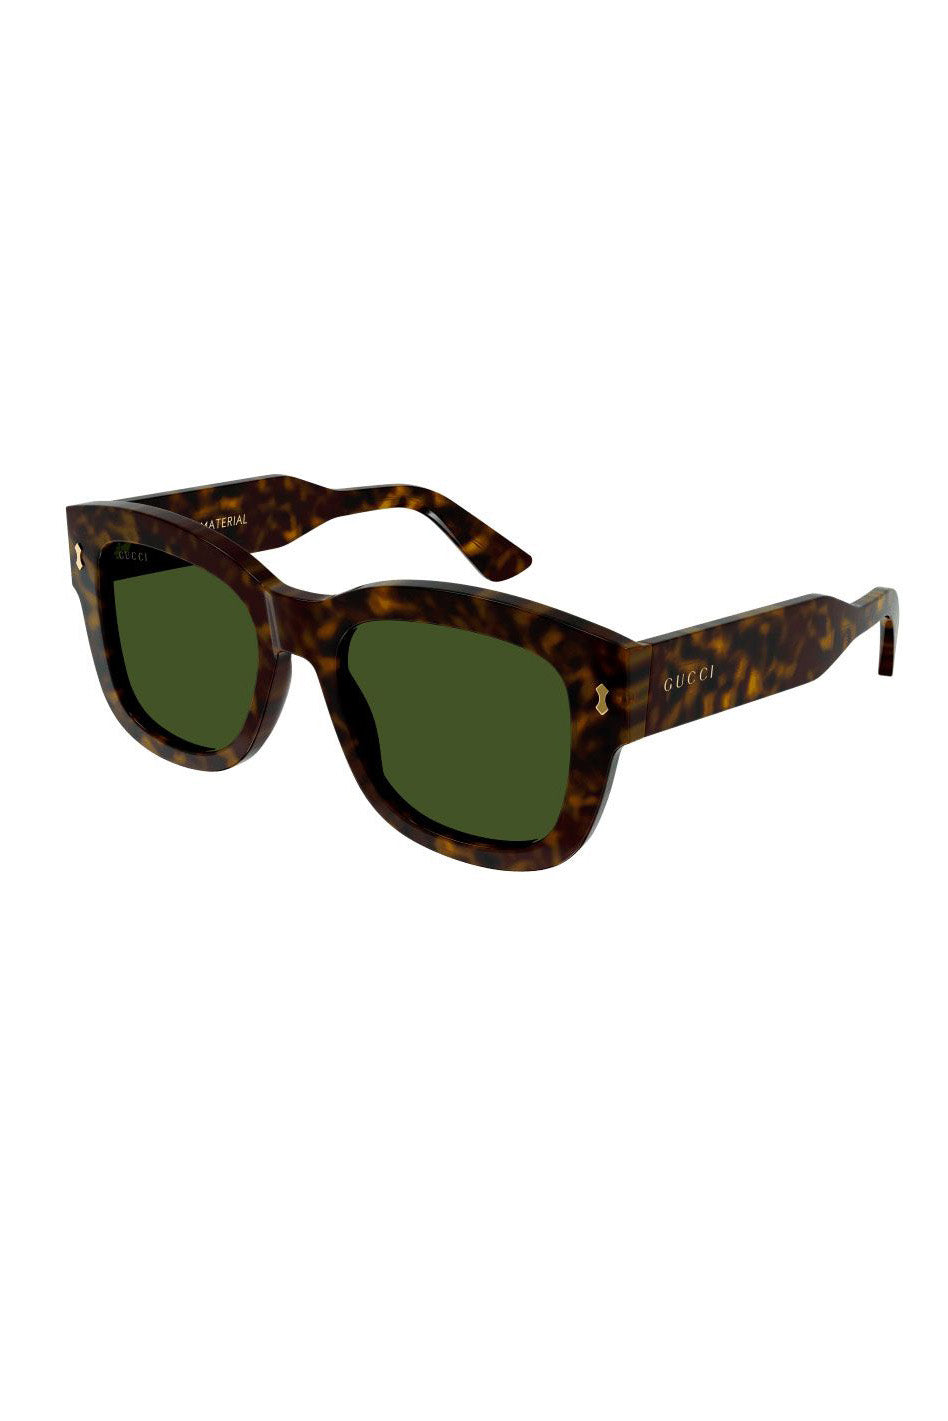 Gucci Square-frame sunglasses Tortoiseshell GG1110S 003